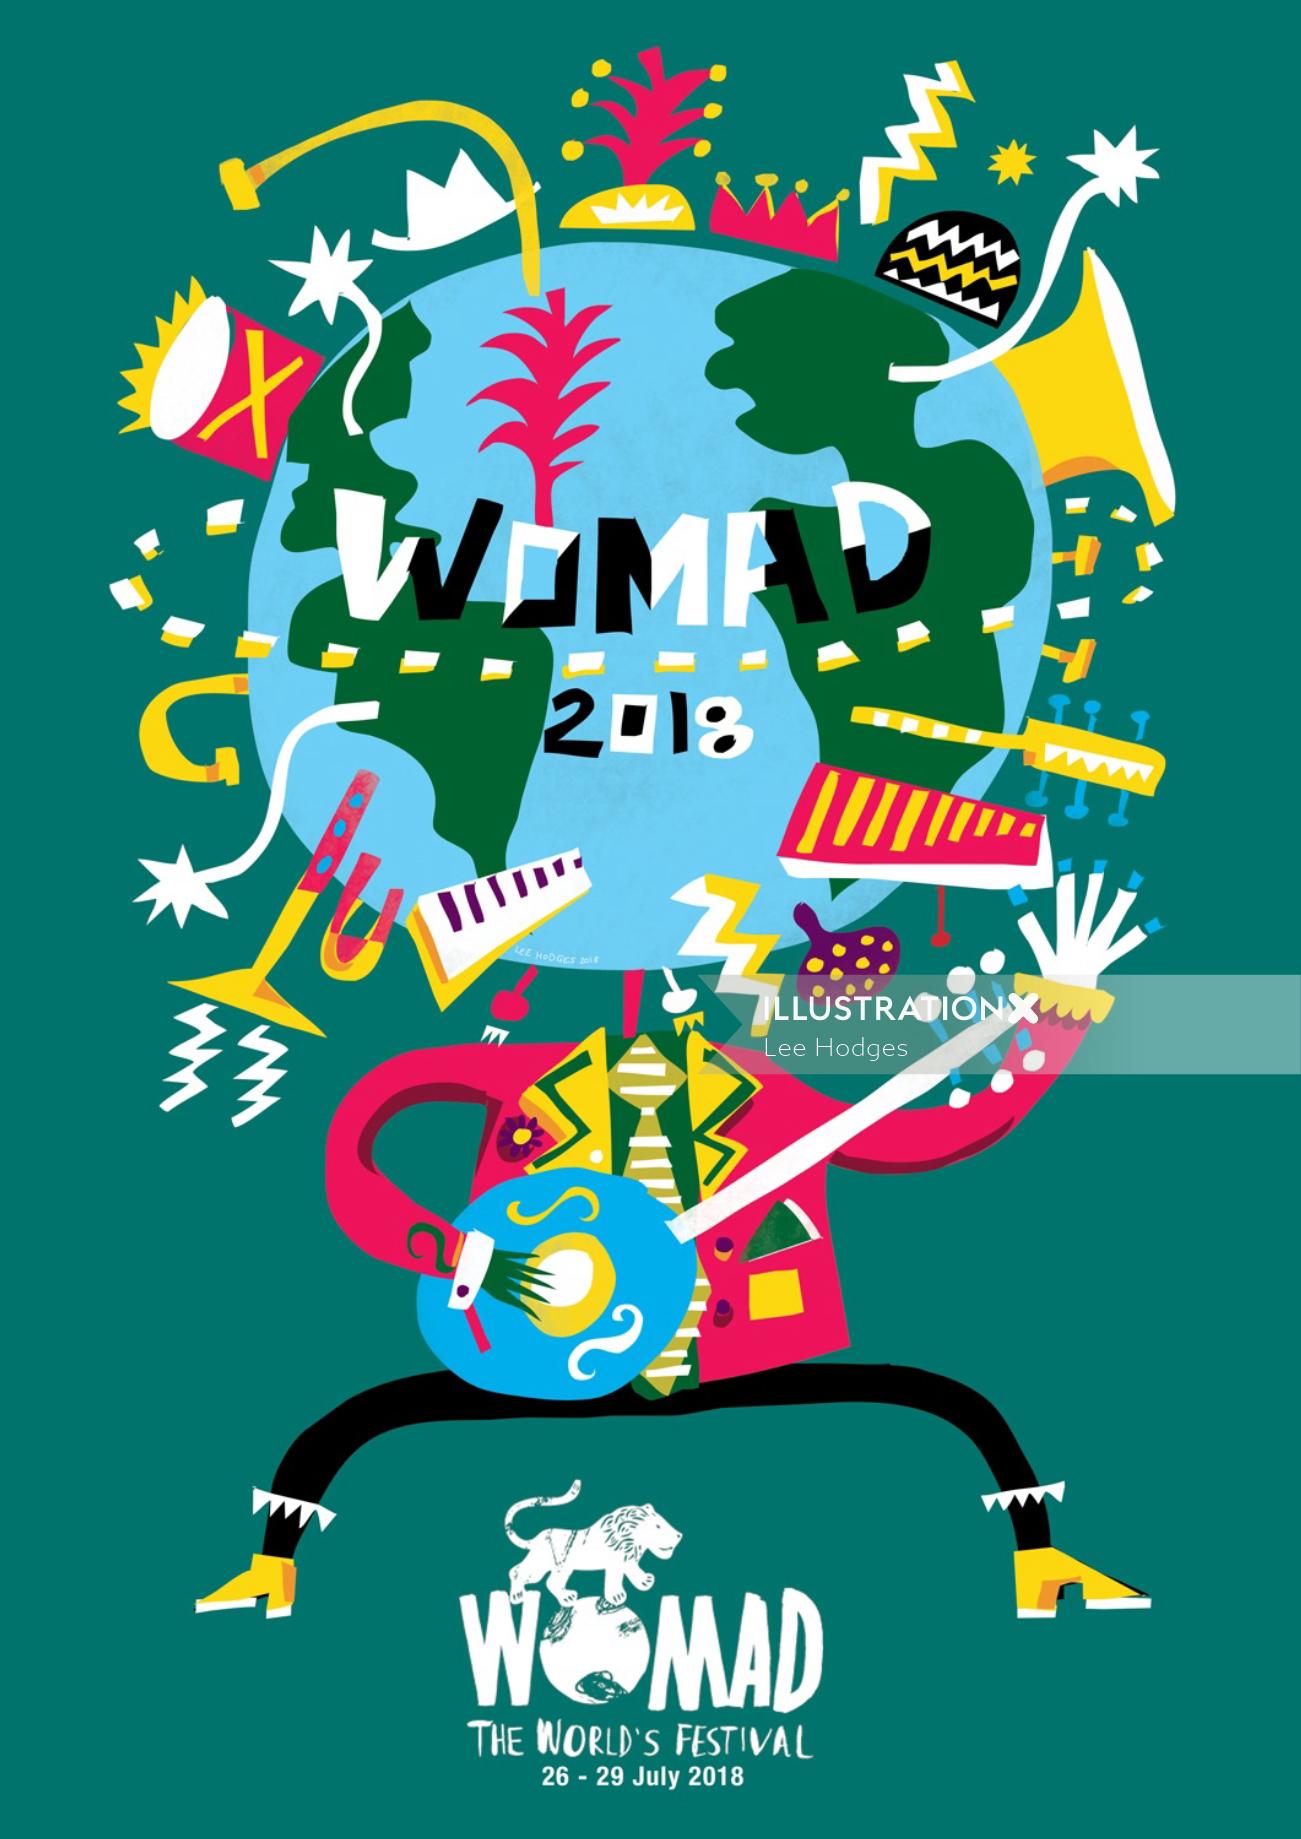 Arte da camiseta do festival WOMAD